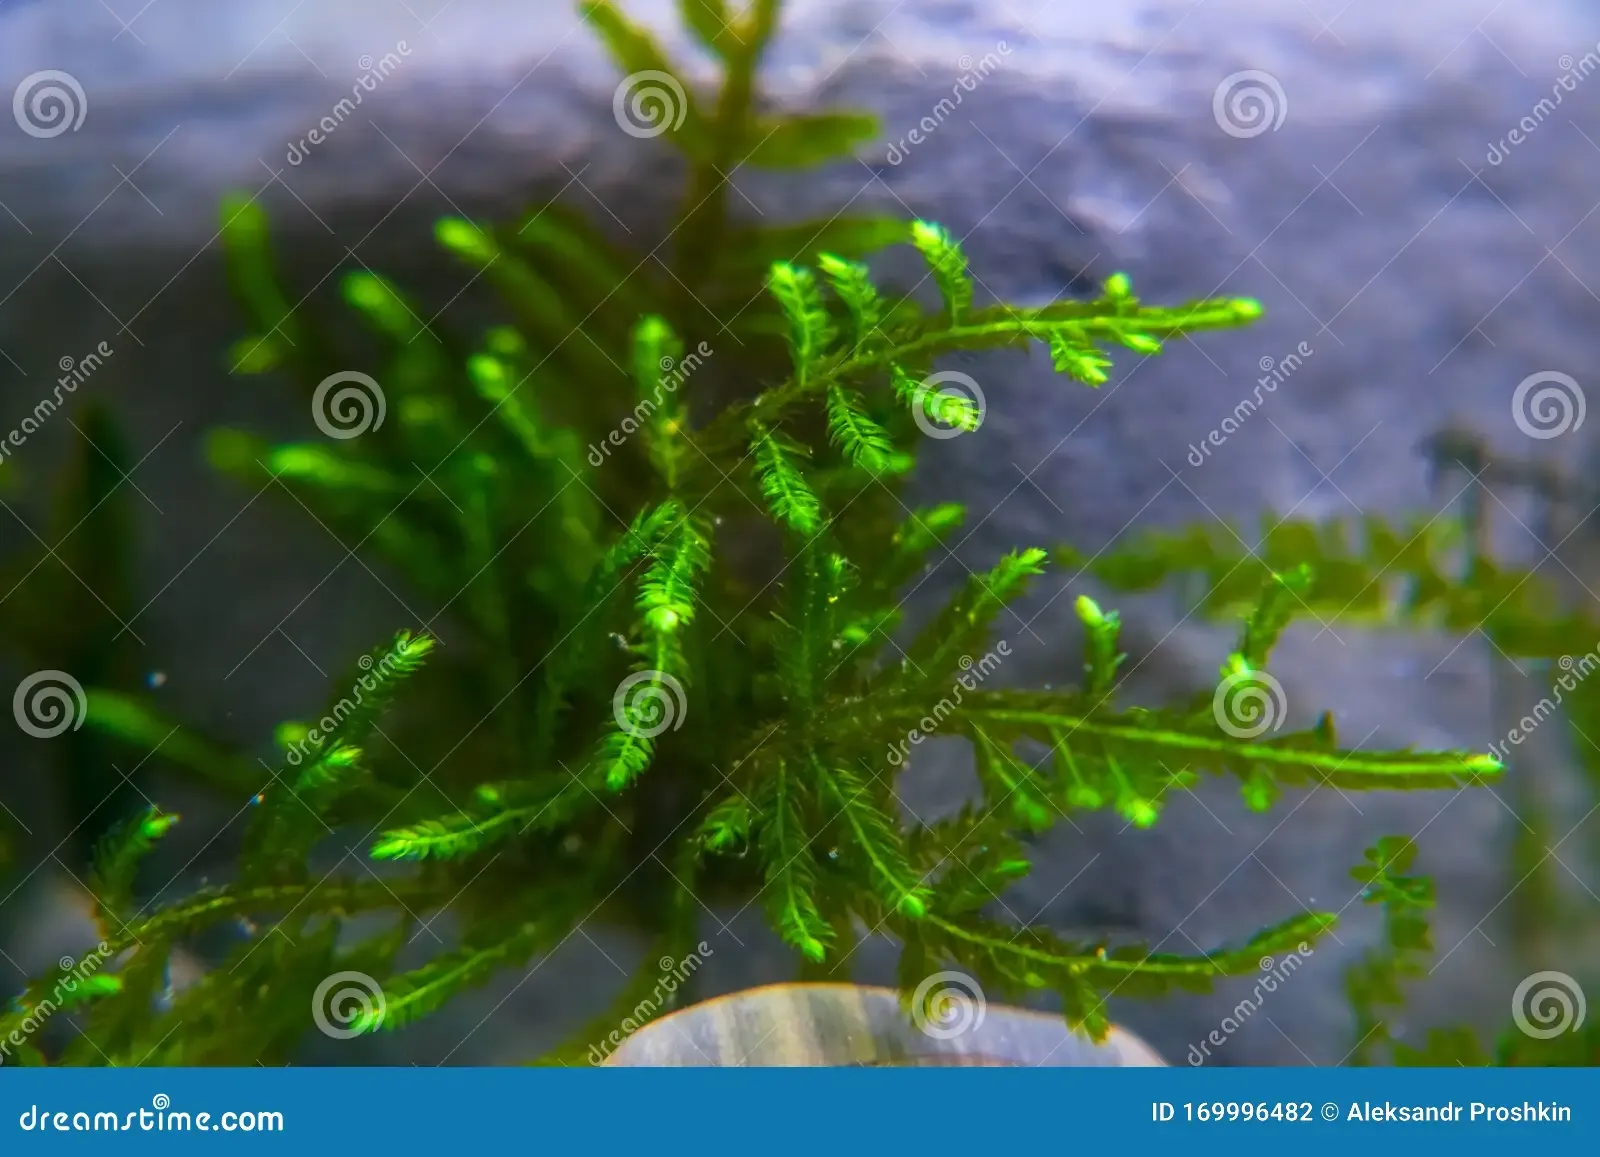 sprig-christmas-moss-aquarium-vesicularia-montagnei-sprig-christmas-moss-aquarium-vesicularia-montagnei-soft-169996482.jpg